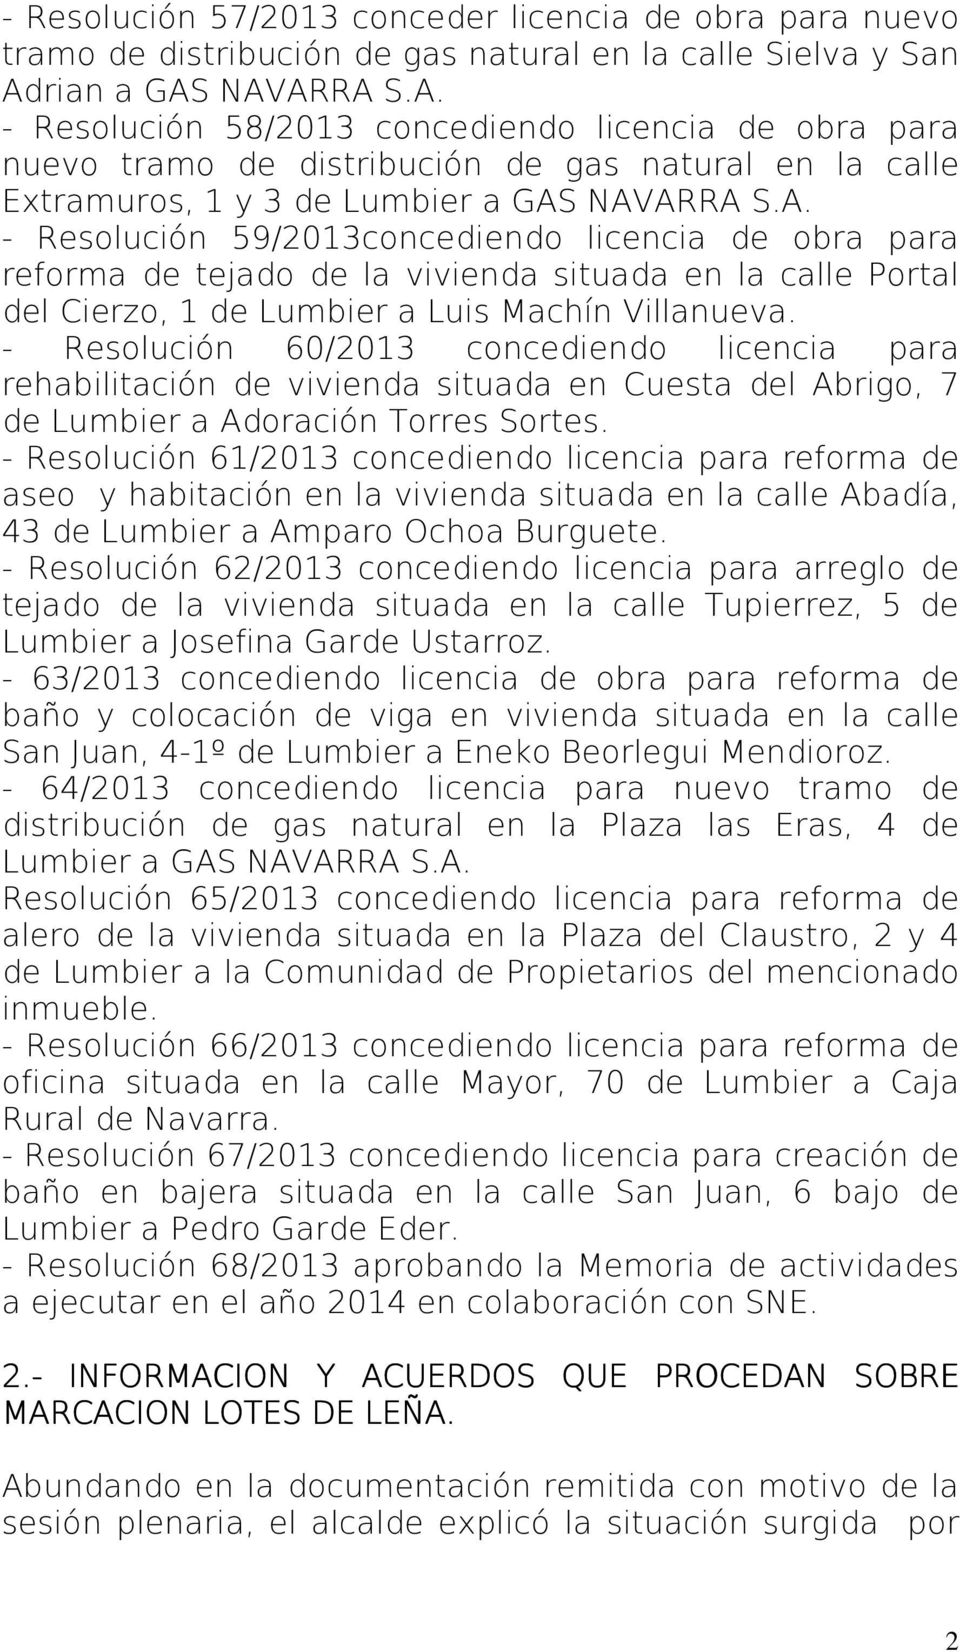 - Resolución 60/2013 concediendo licencia para rehabilitación de vivienda situada en Cuesta del Abrigo, 7 de Lumbier a Adoración Torres Sortes.